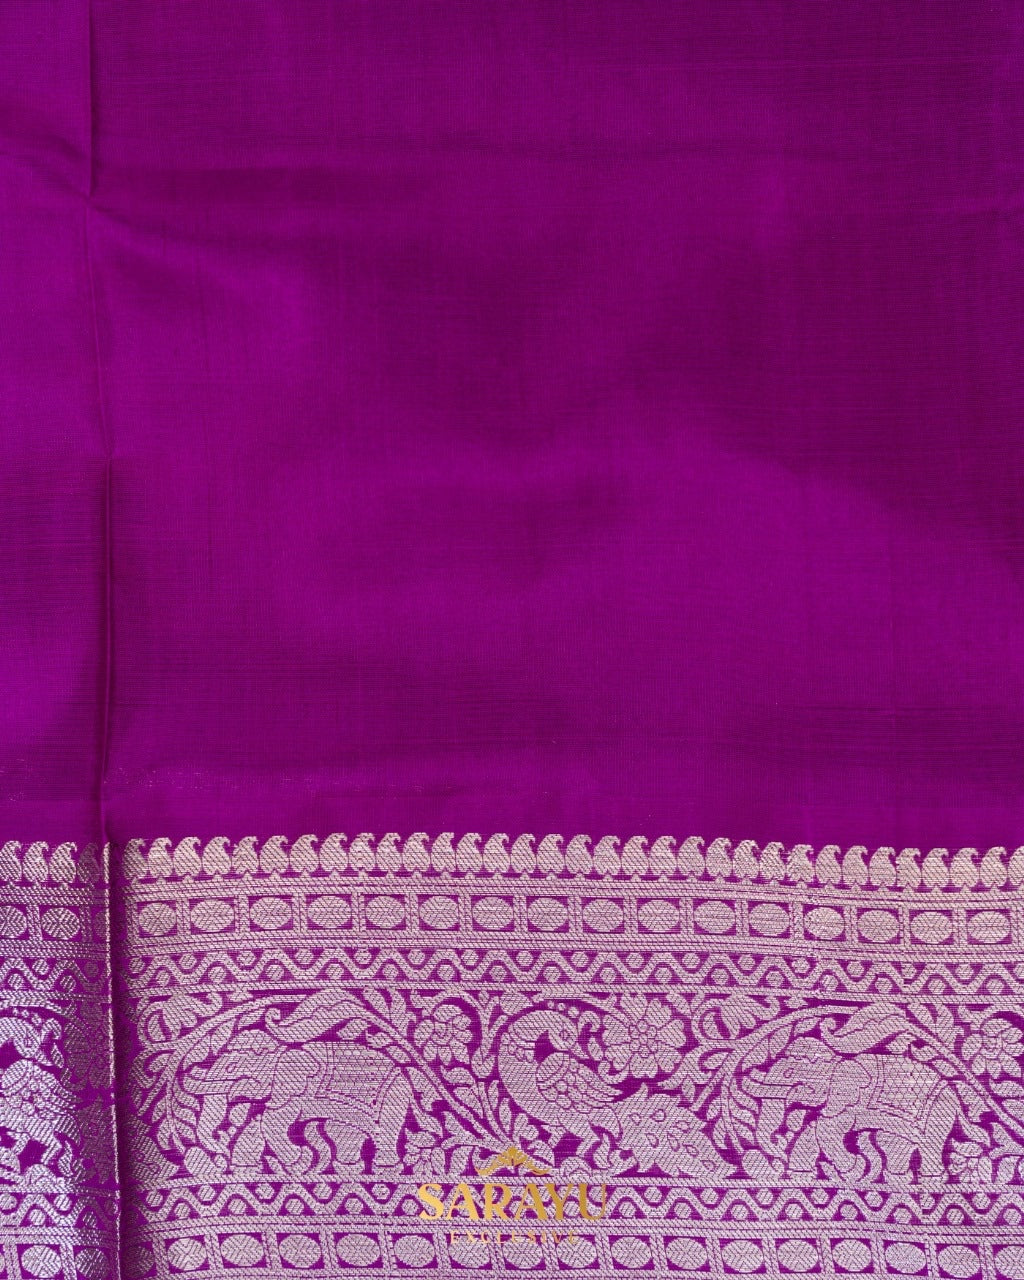 Pesara Green and Magenta Pink Pure Venkatagiri Silk